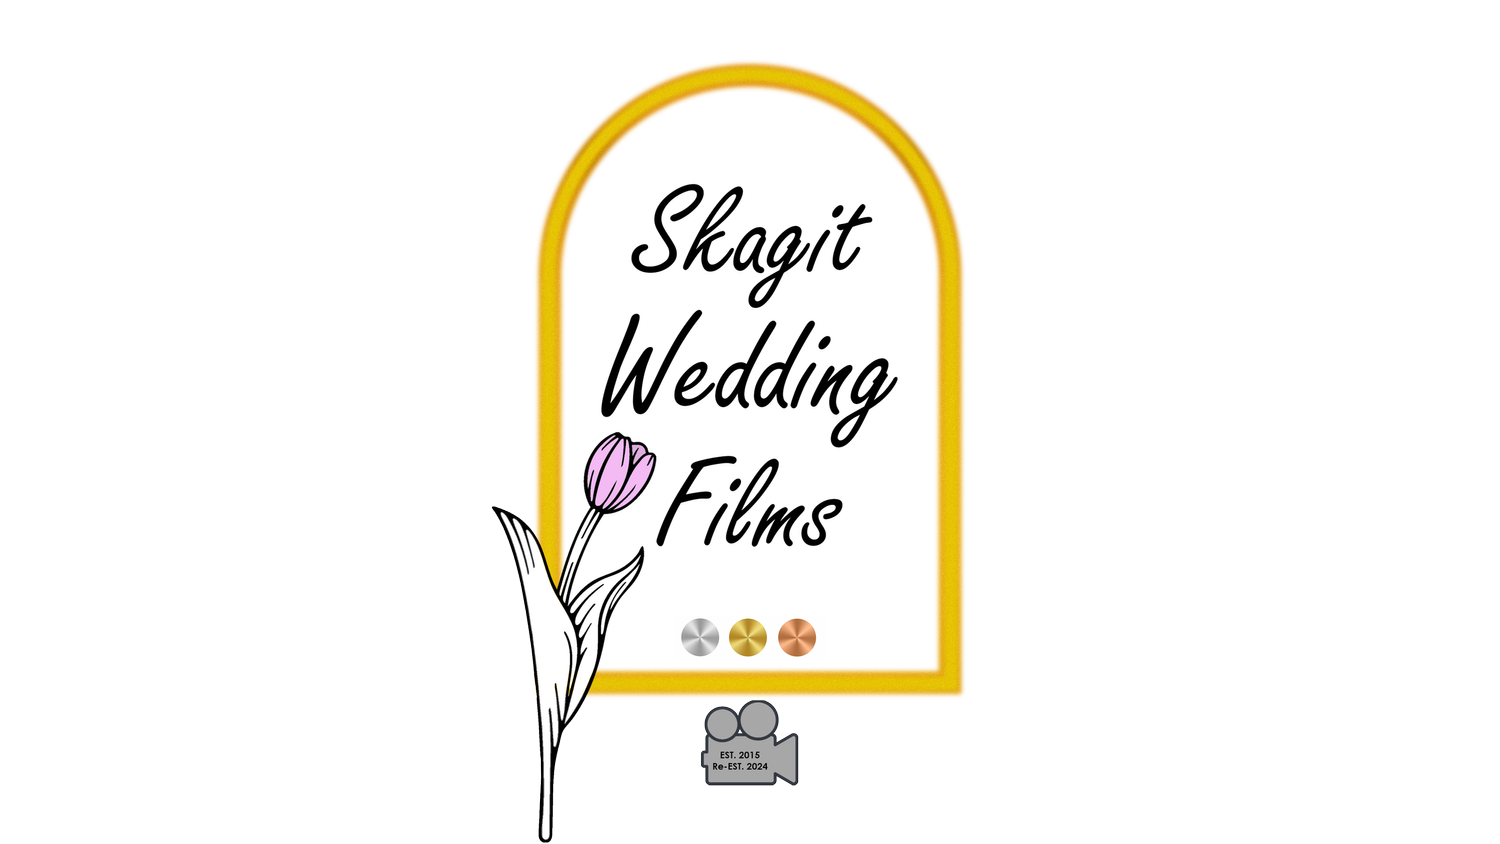 Skagit Wedding Films